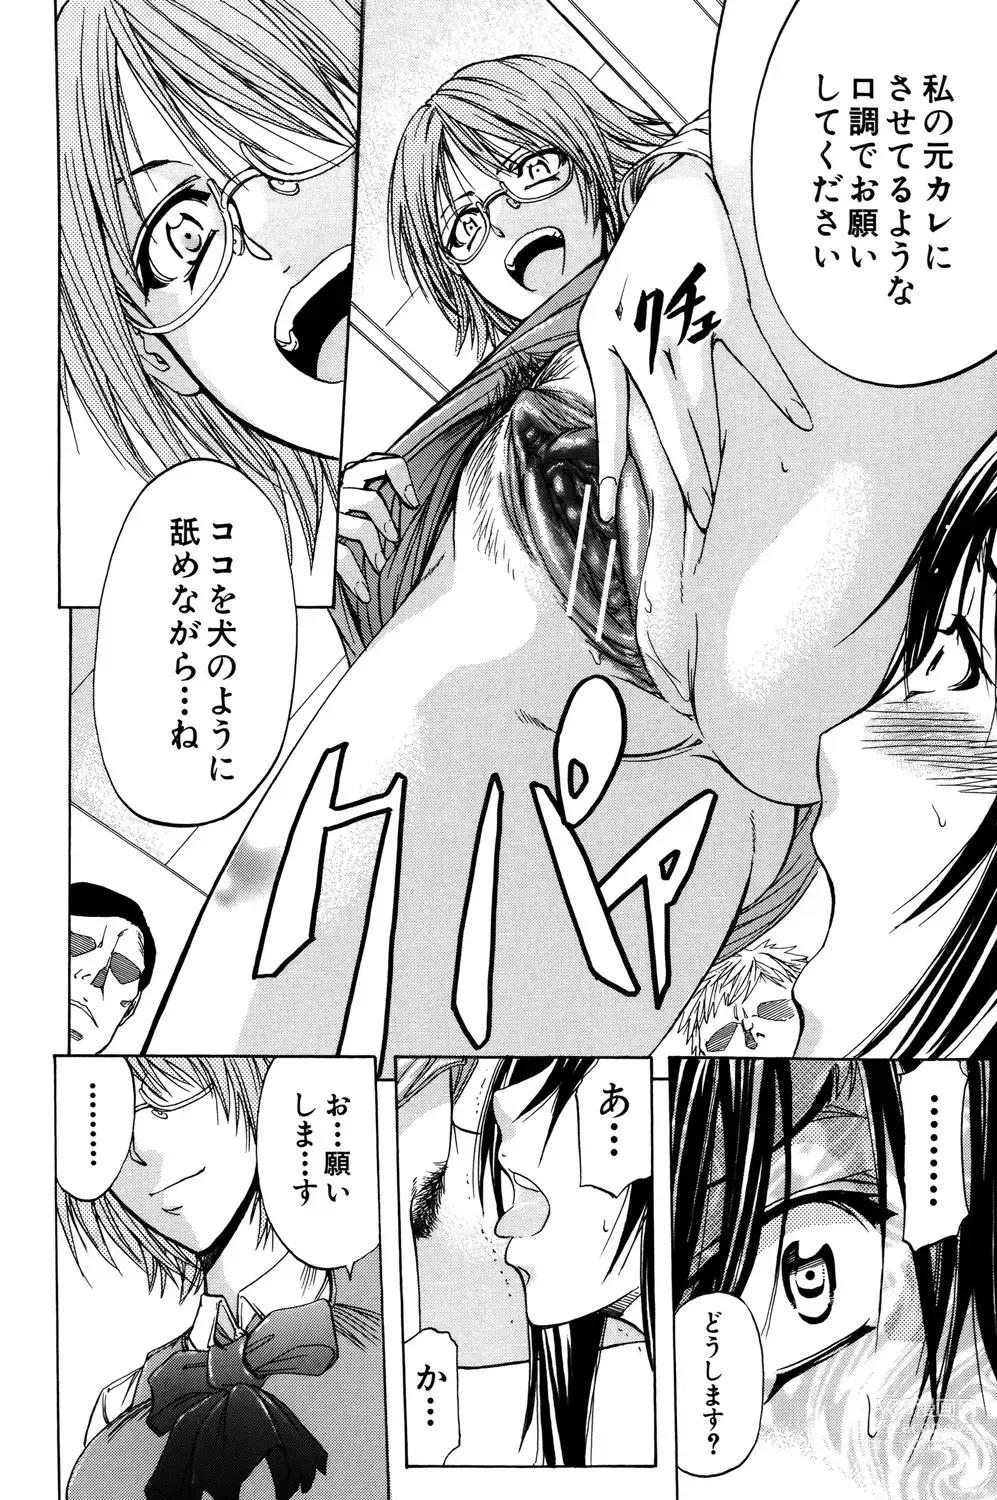 Page 193 of manga ANAL BACKER